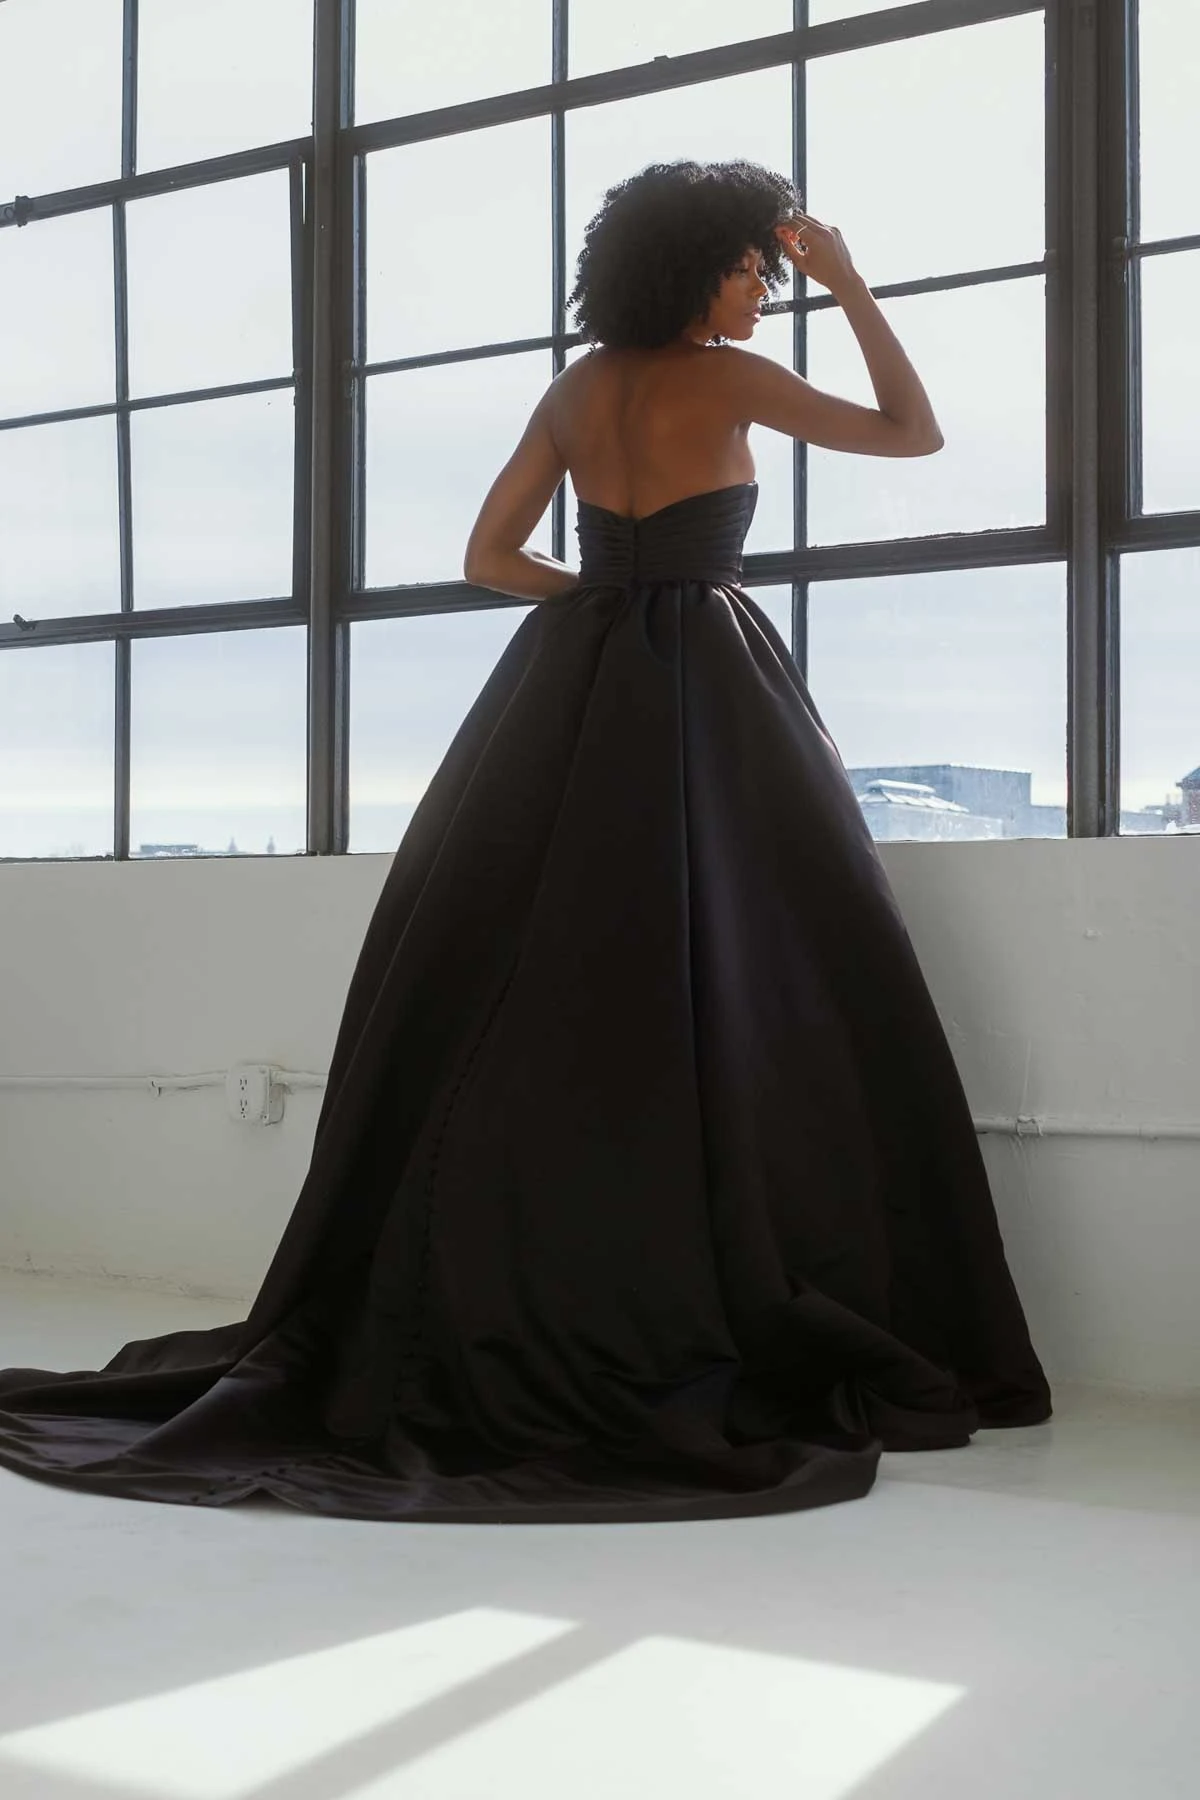 strapless black ballgown wedding dress with sweetheart neckline - D3753 by Essense of Australia